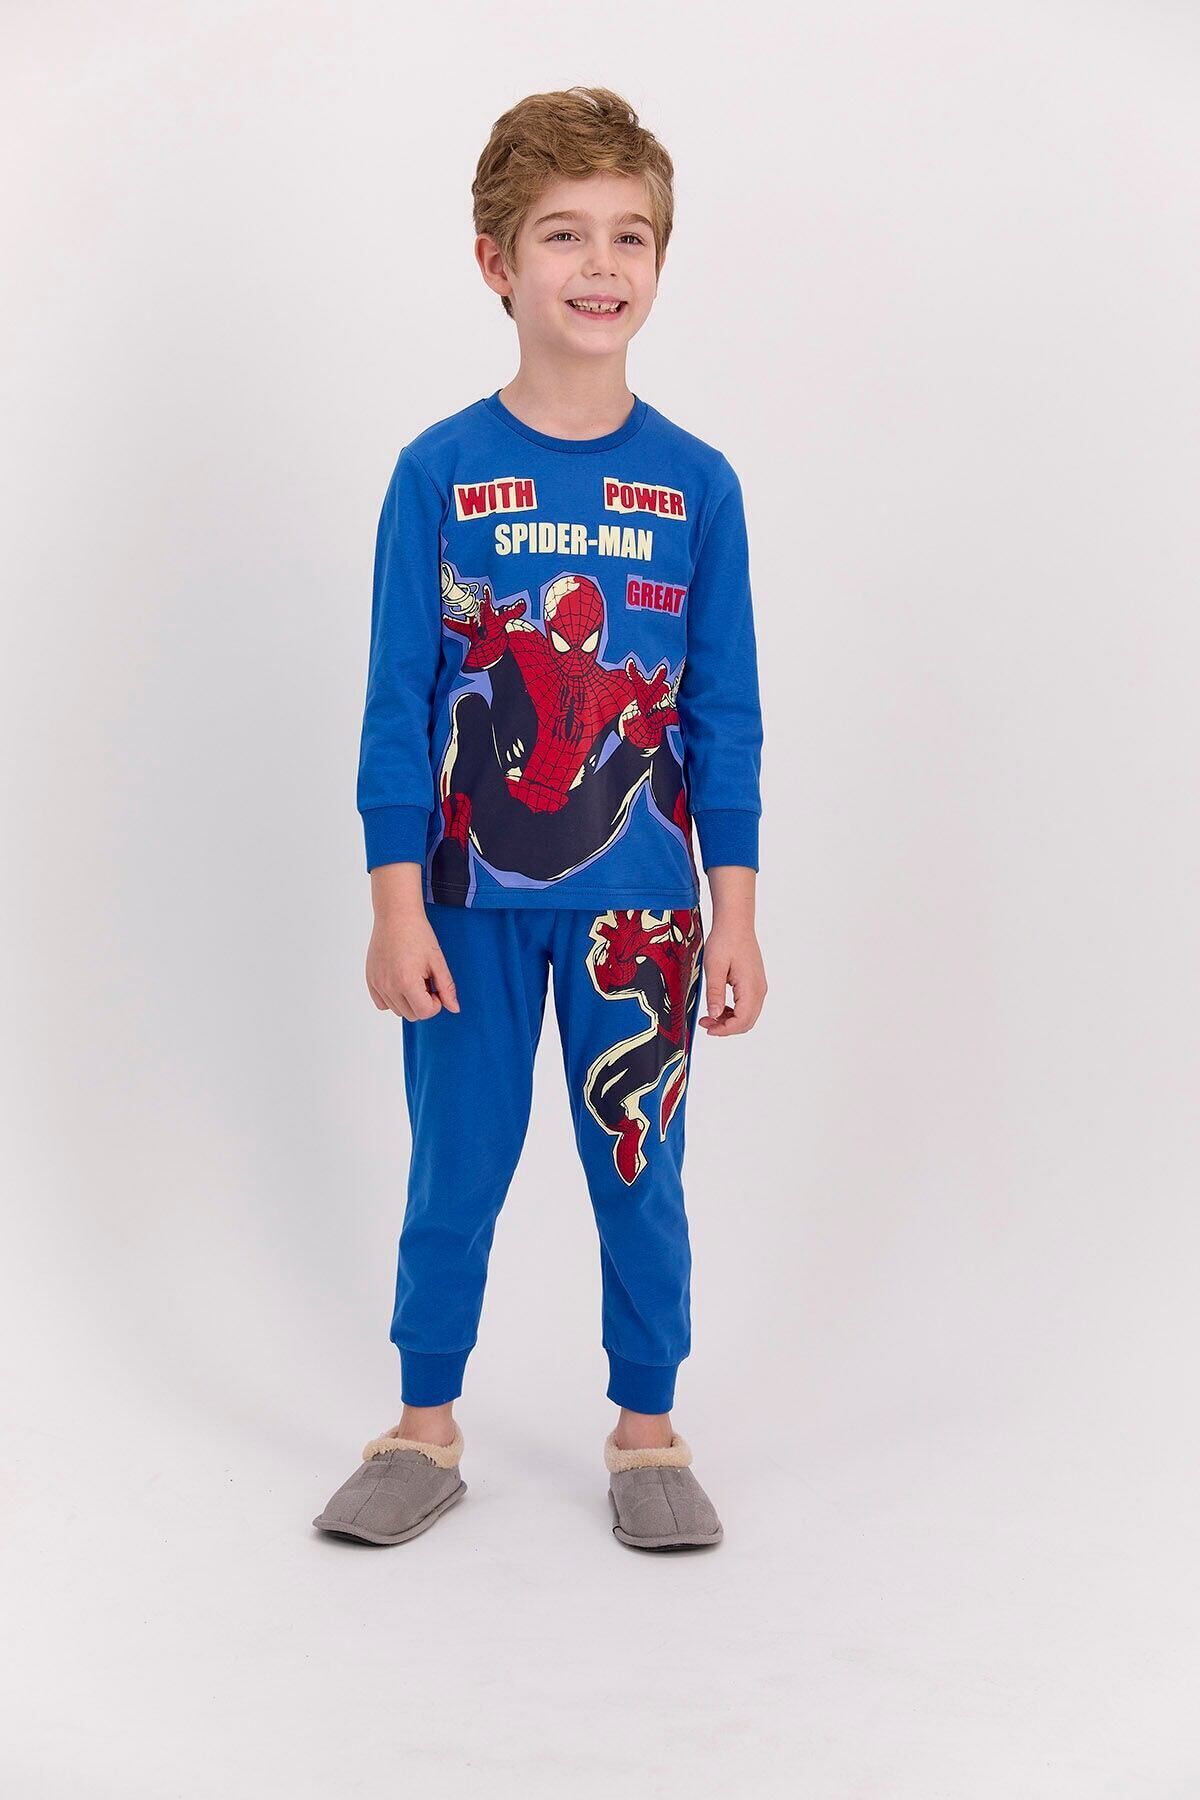 Spiderman Lisanslı With Power Cobalt Mavi Erkek Çocuk Pijama Takımı D4619-c